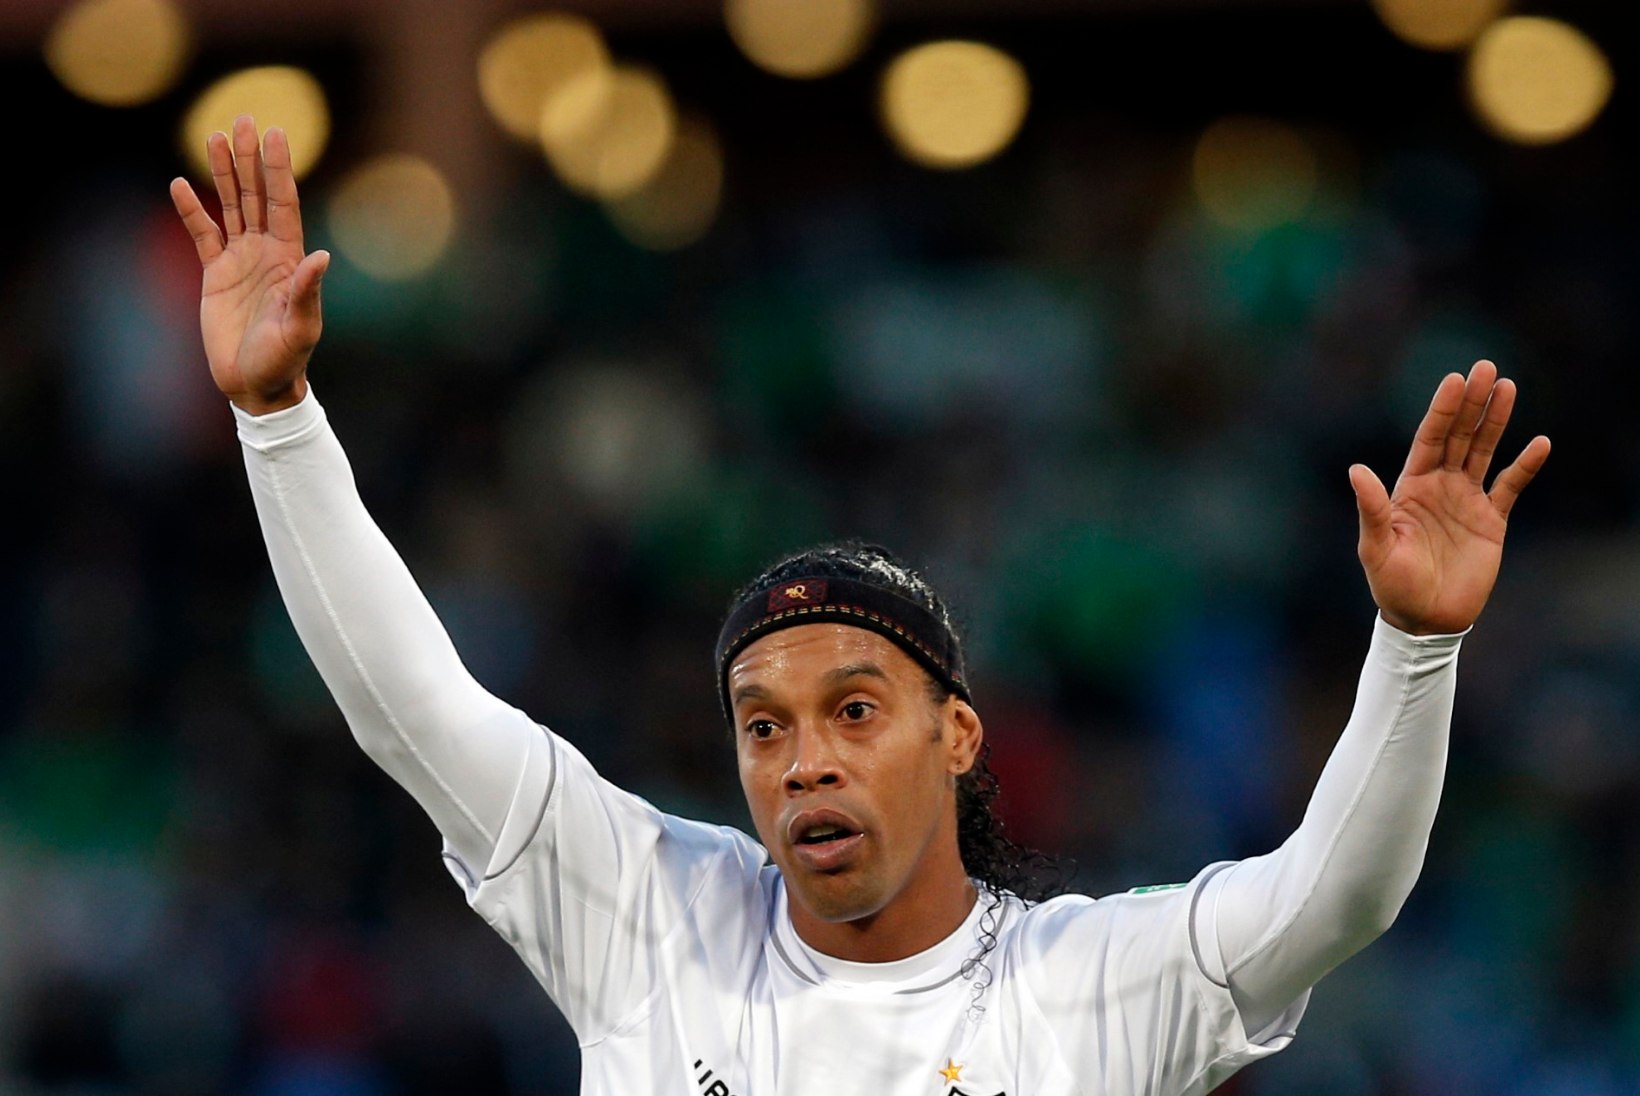 FOTOD: Ronaldinho annab oma maja MM-i ajaks raske raha eest üürile